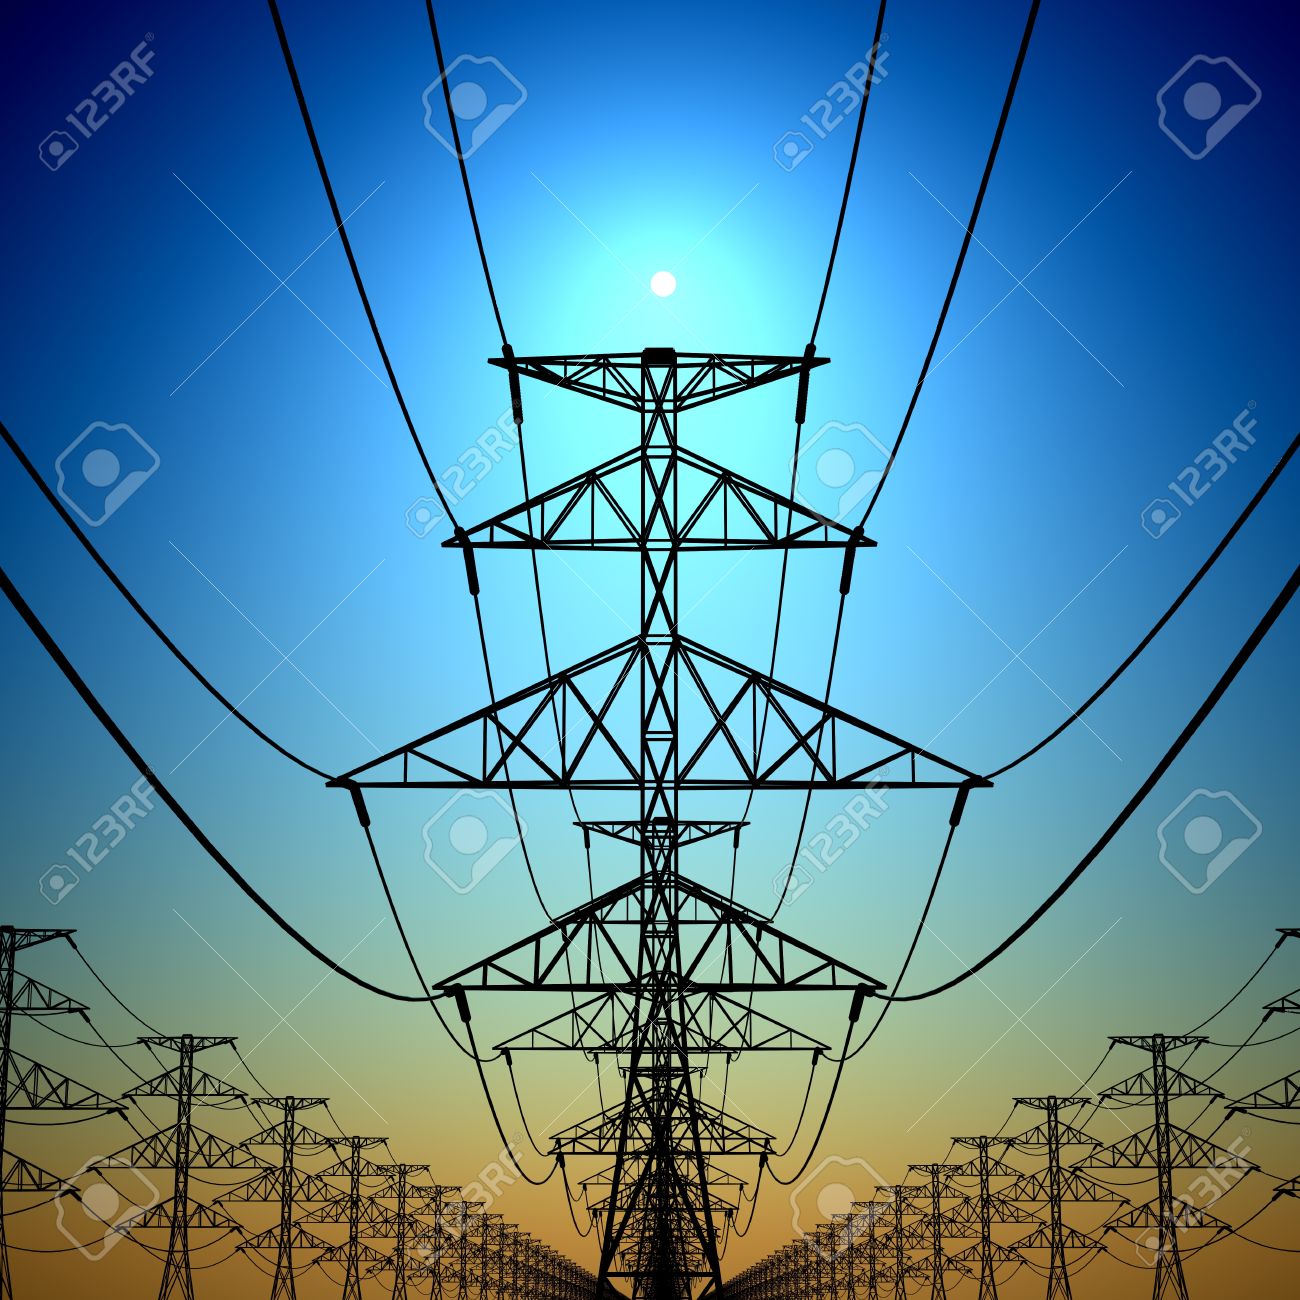 Torres-de-electricidad-y-las-l-neas-con-el-sol-en-el-fondo--Foto-de-archivo